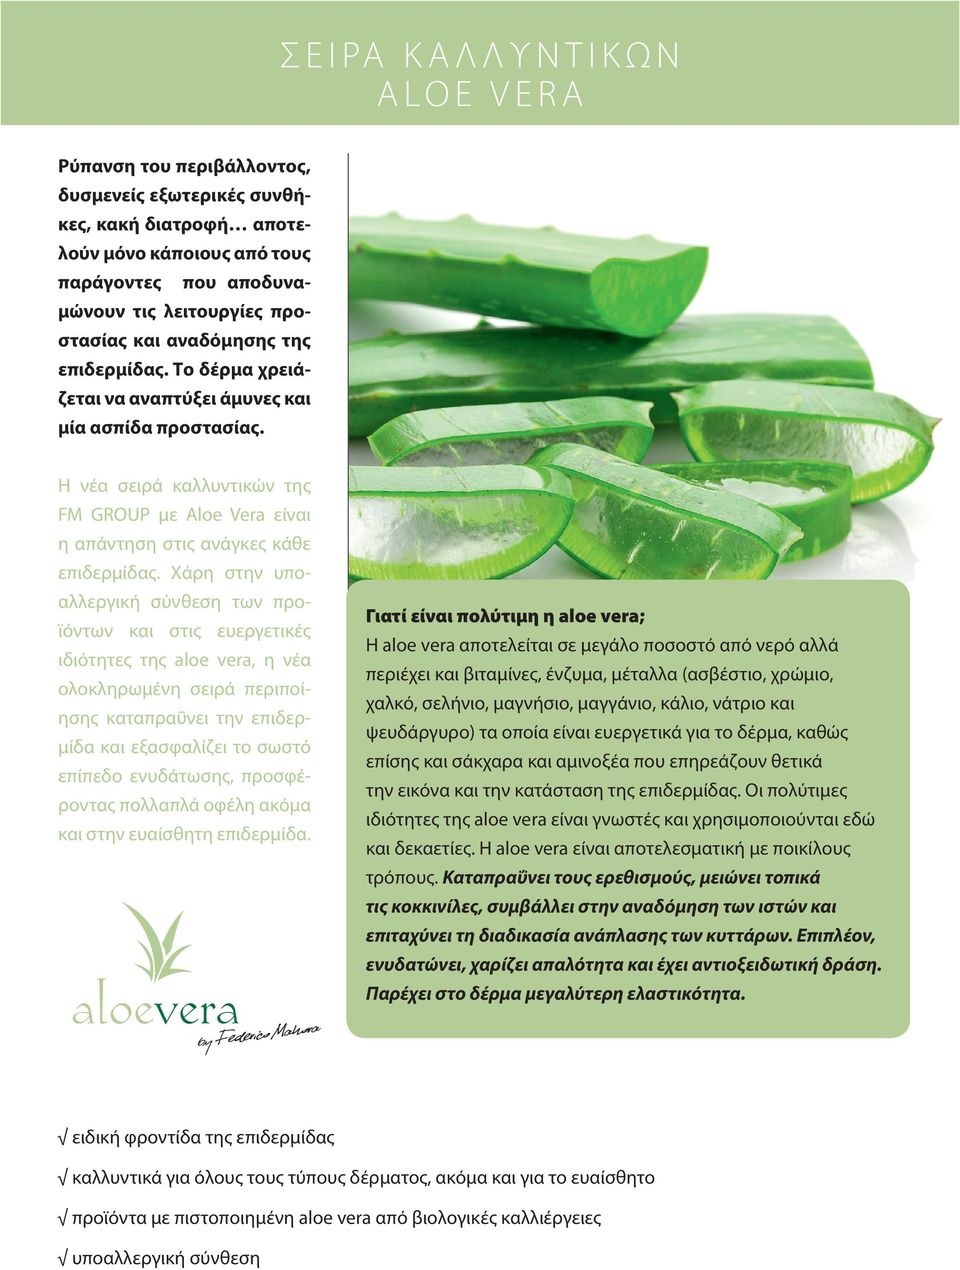 Χάρη στην υποαλλεργική σύνθεση των προϊόντων και στις ευεργετικές ιδιότητες της aloe vera, η νέα ολοκληρωμένη σειρά περιποίησης καταπραΰνει την επιδερμίδα και εξασφαλίζει το σωστό επίπεδο ενυδάτωσης,